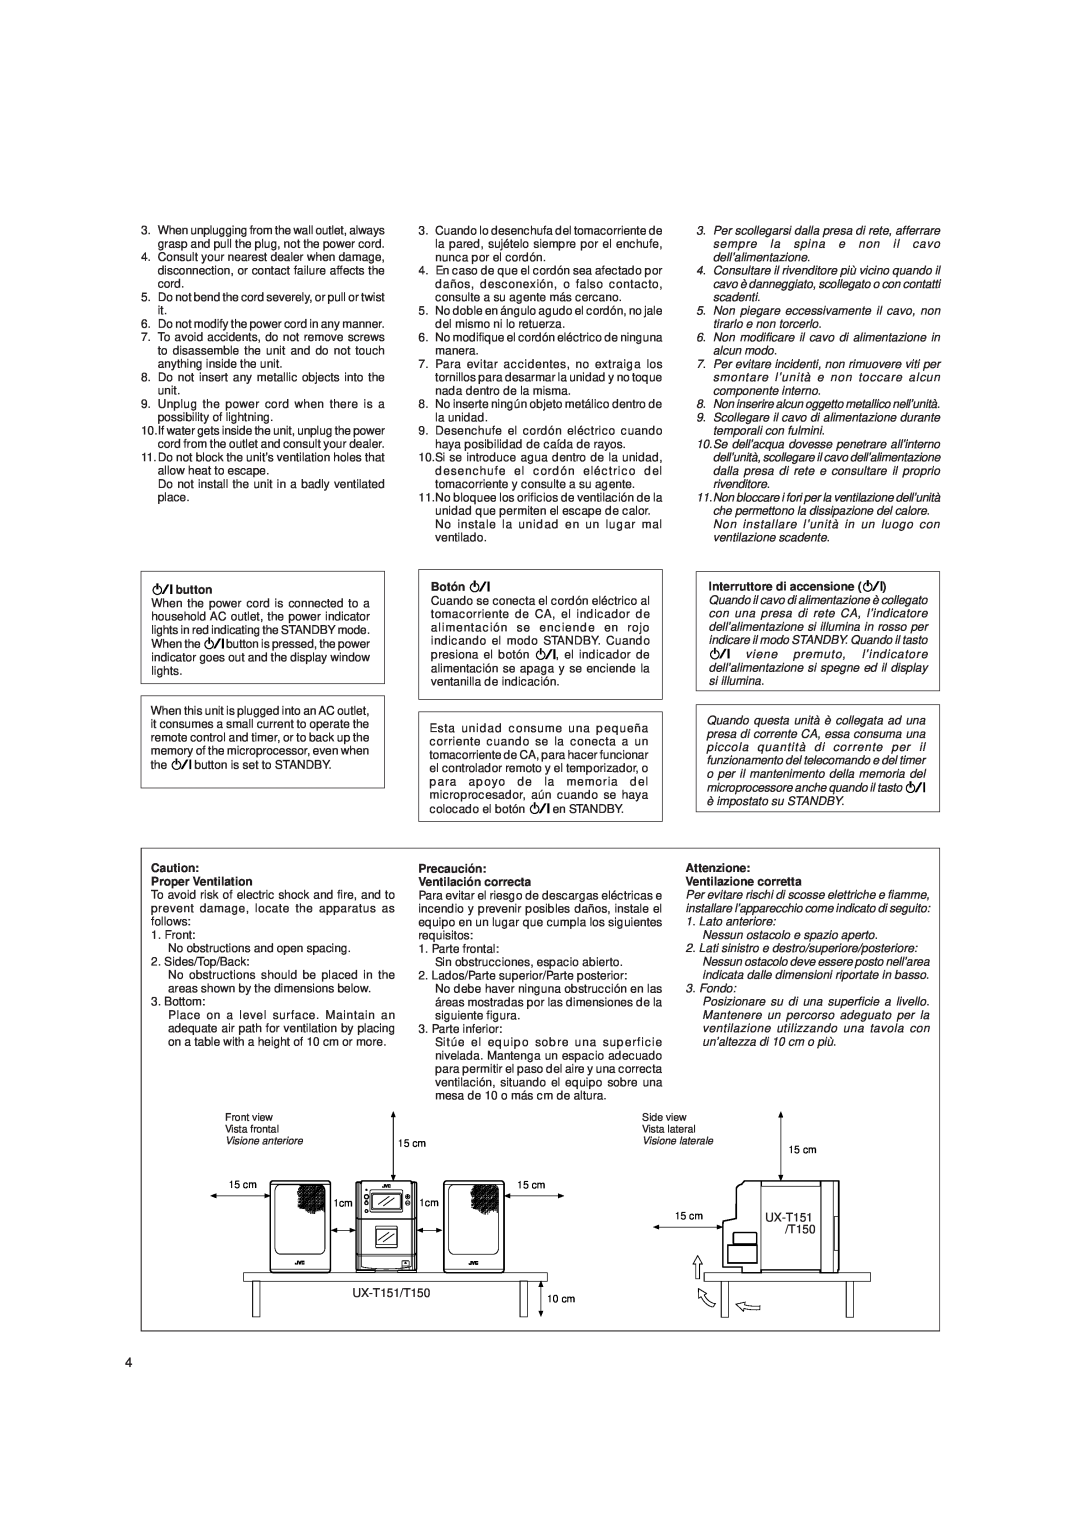 JVC UX-T151, UX-T150 button, Botón, Proper Ventilation, Precaución Ventilación correcta, Attenzione Ventilazione corretta 